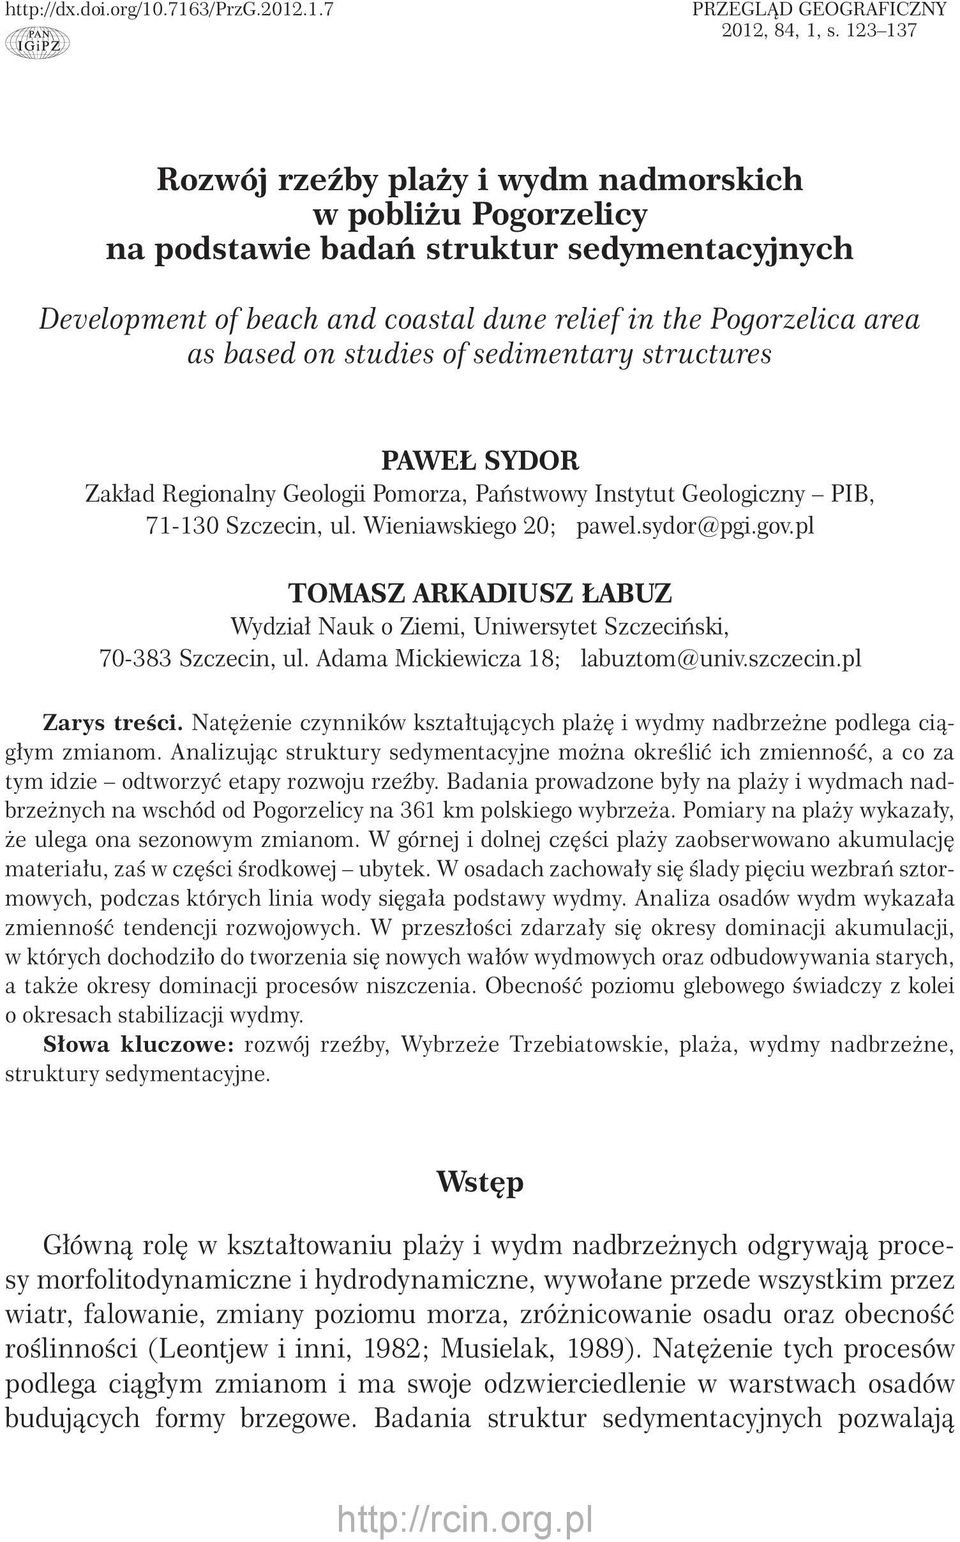 studies of sedimentary structures PAWEŁ SYDR Zakład Regionalny Geologii Pomorza, Państwowy Instytut Geologiczny PIB, 71-130 Szczecin, ul. Wieniawskiego 20; pawel.sydor@pgi.gov.